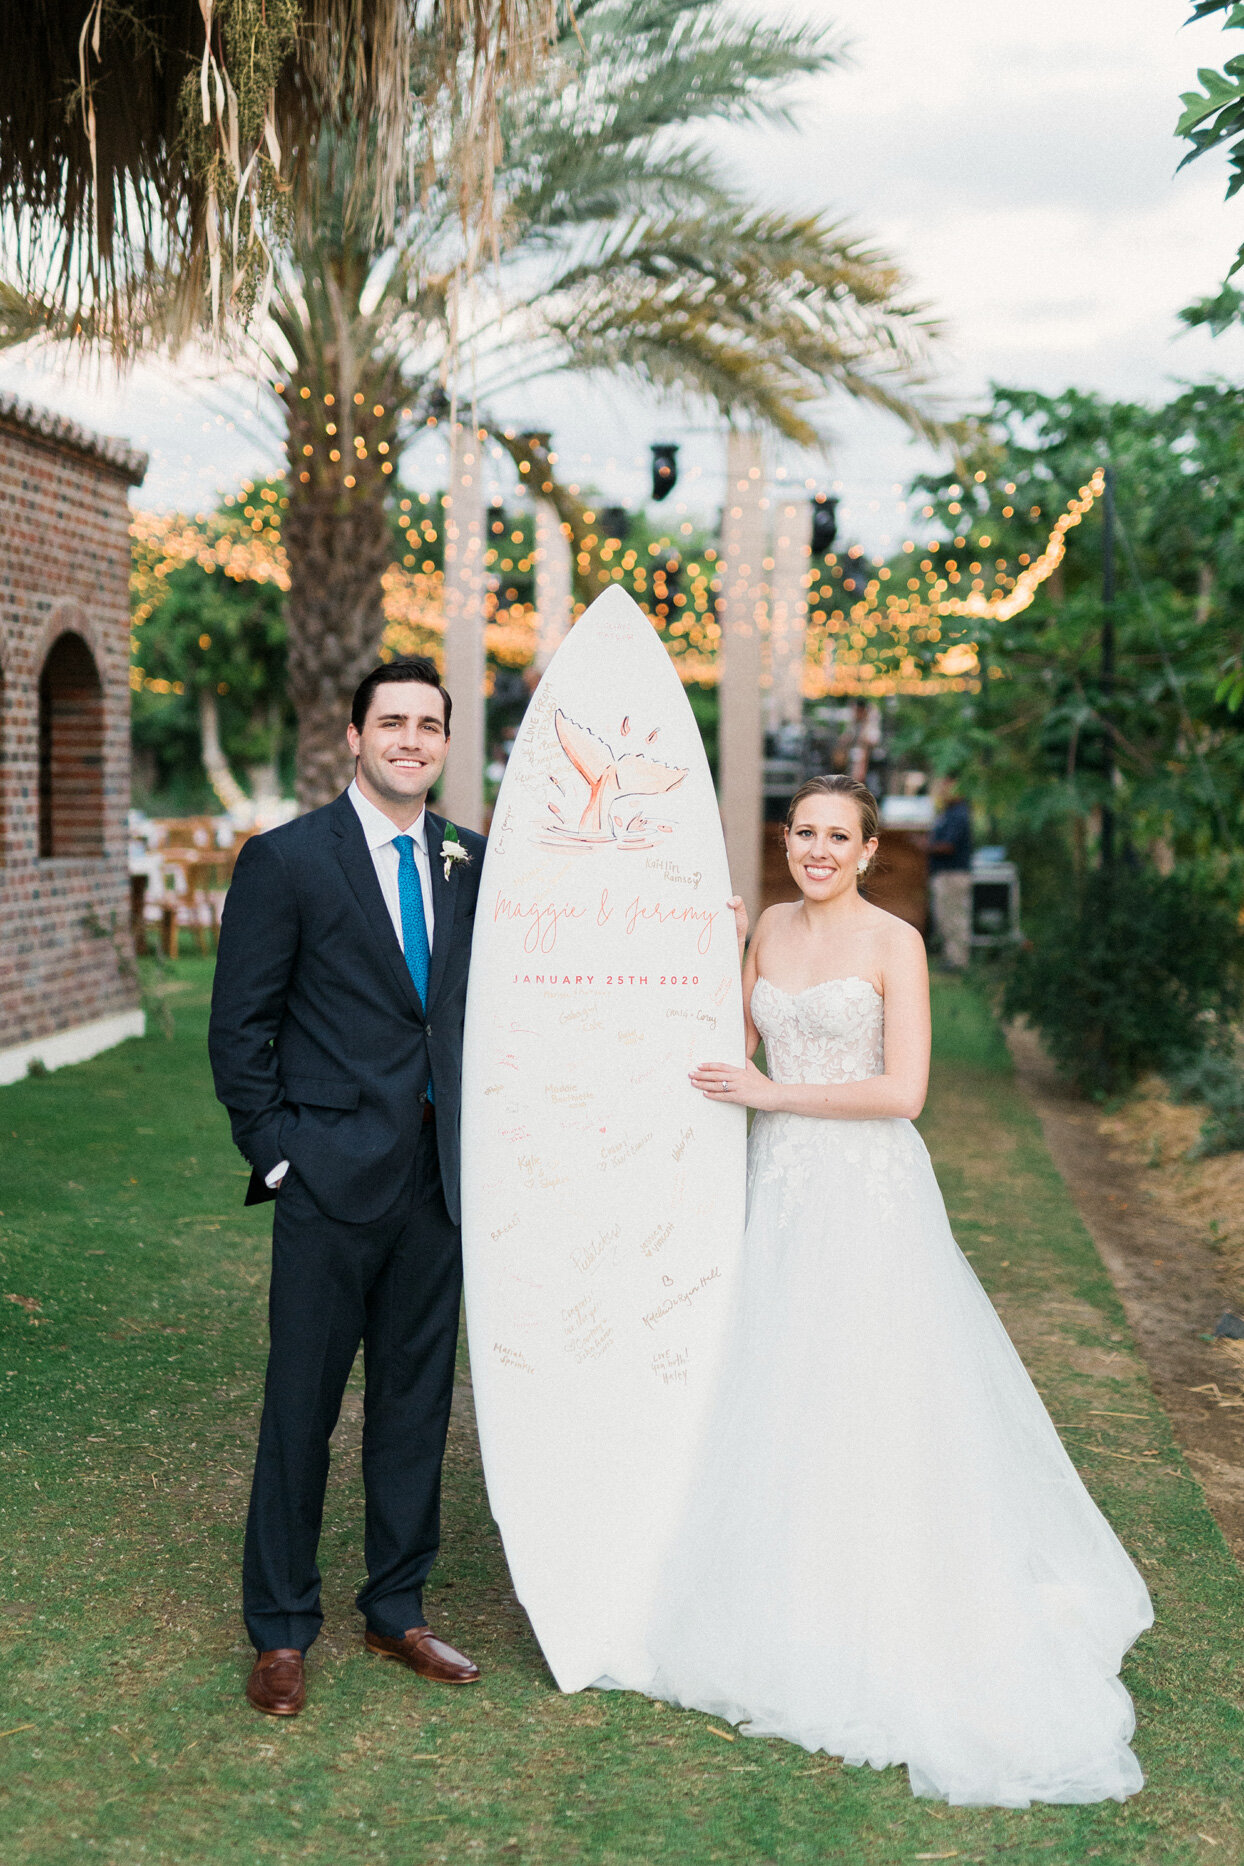 wedding custom guest book surf board.jpg